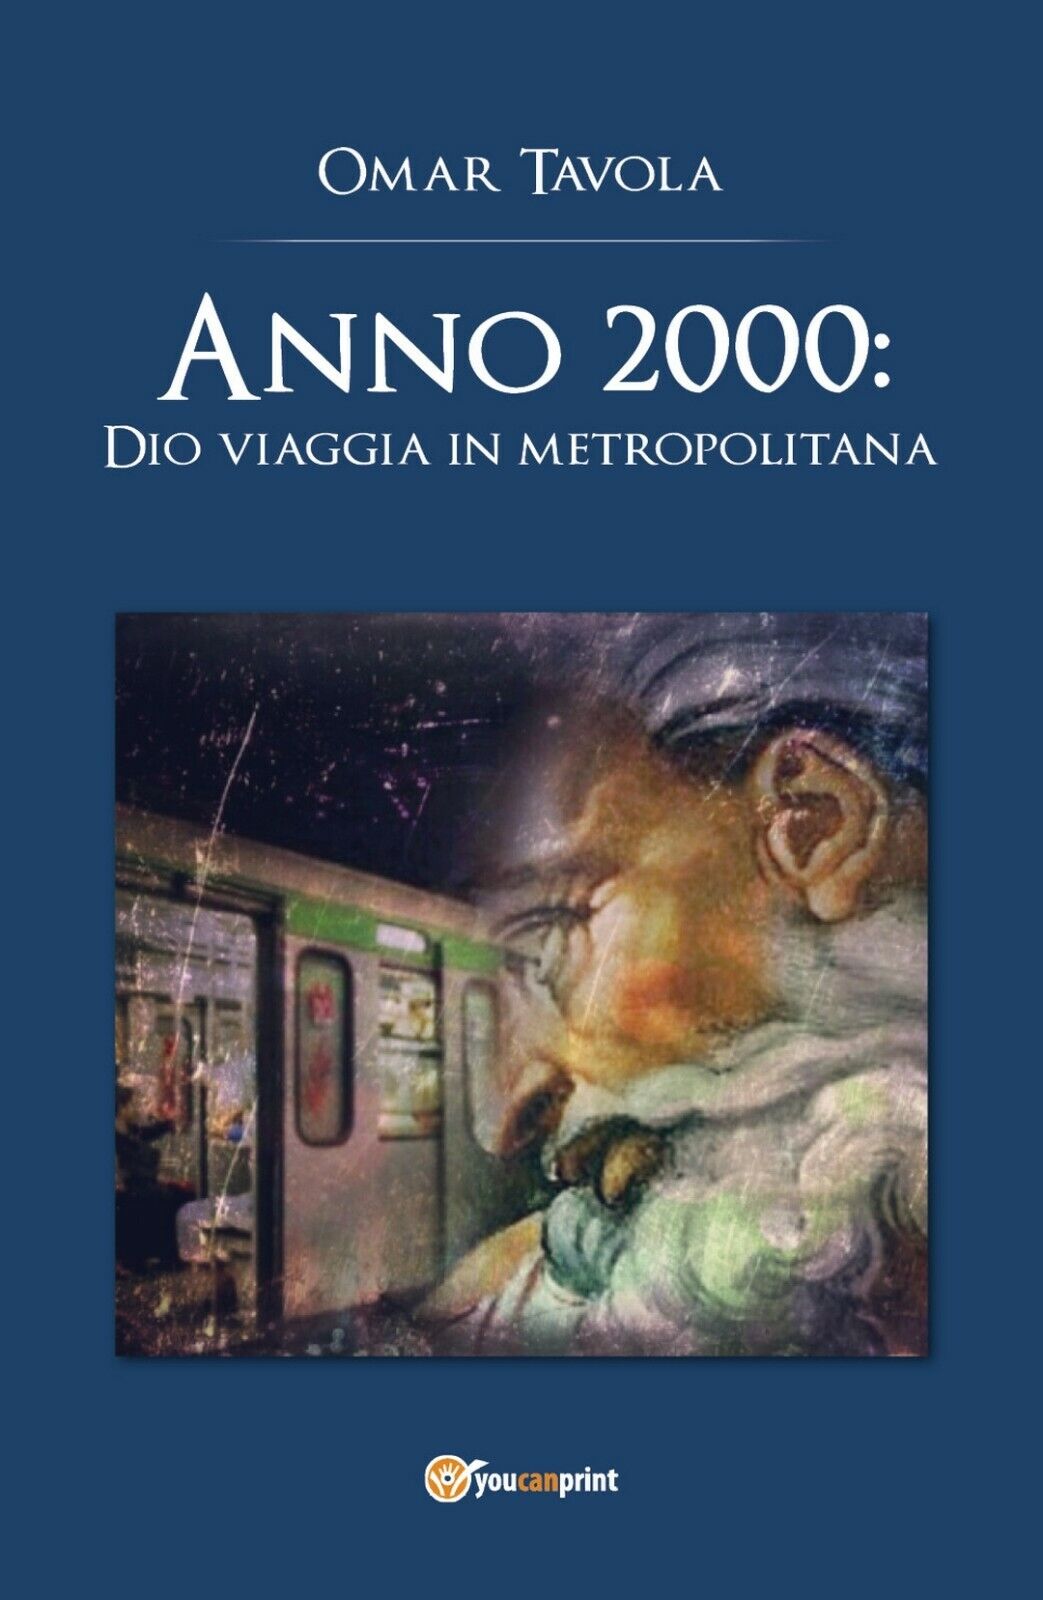 Anno 2000: Dio viaggia in metropolitana  di Omar Tavola,  2018,  Youcanprint